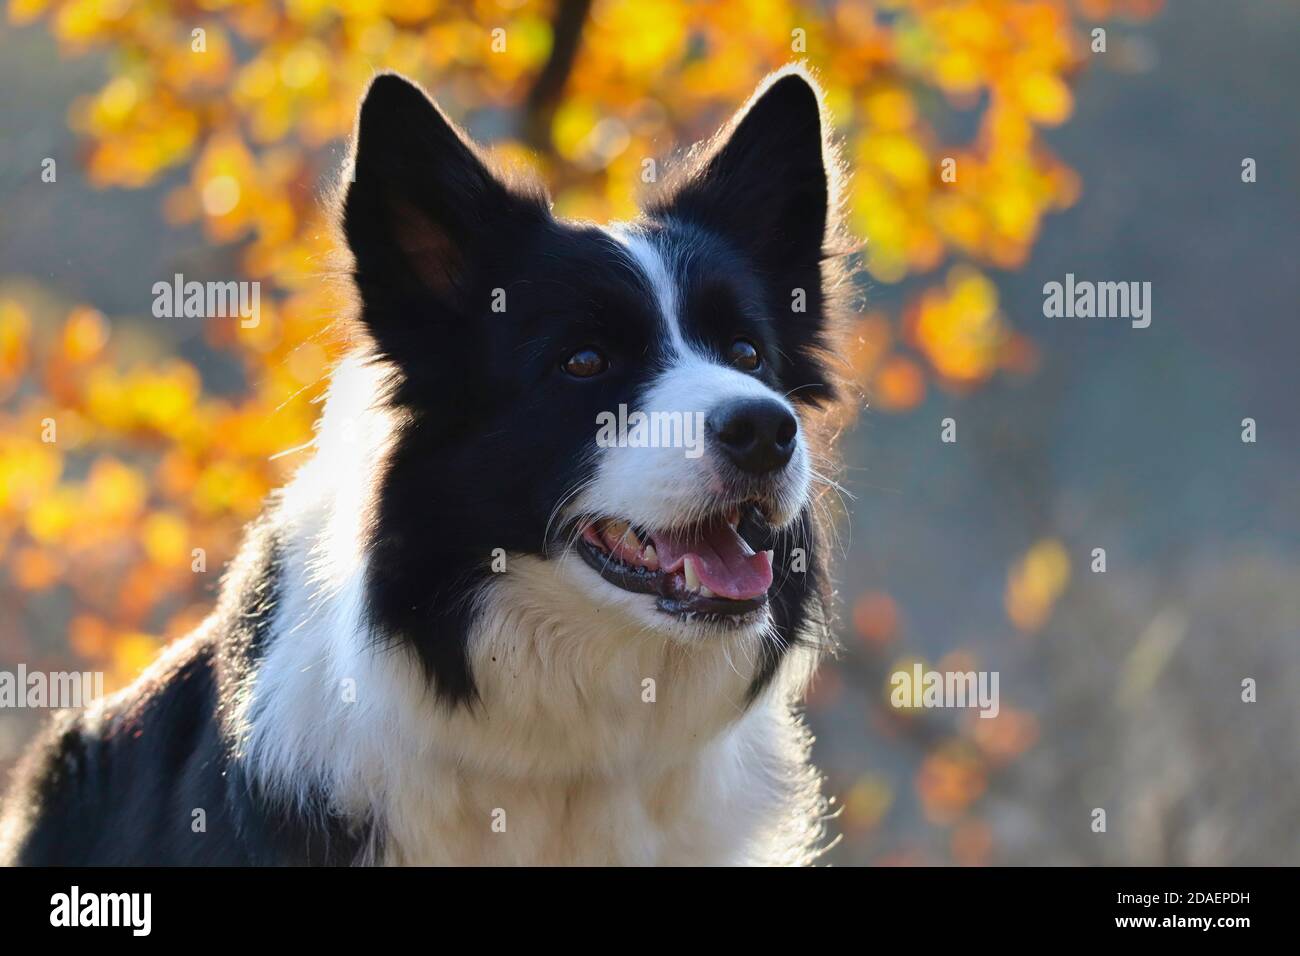 Nahaufnahme von Border Collie Head in Sunny Autumn Nature. Liebenswert schwarz und weiß Hund smiles draußen während der Herbstsaison. Stockfoto